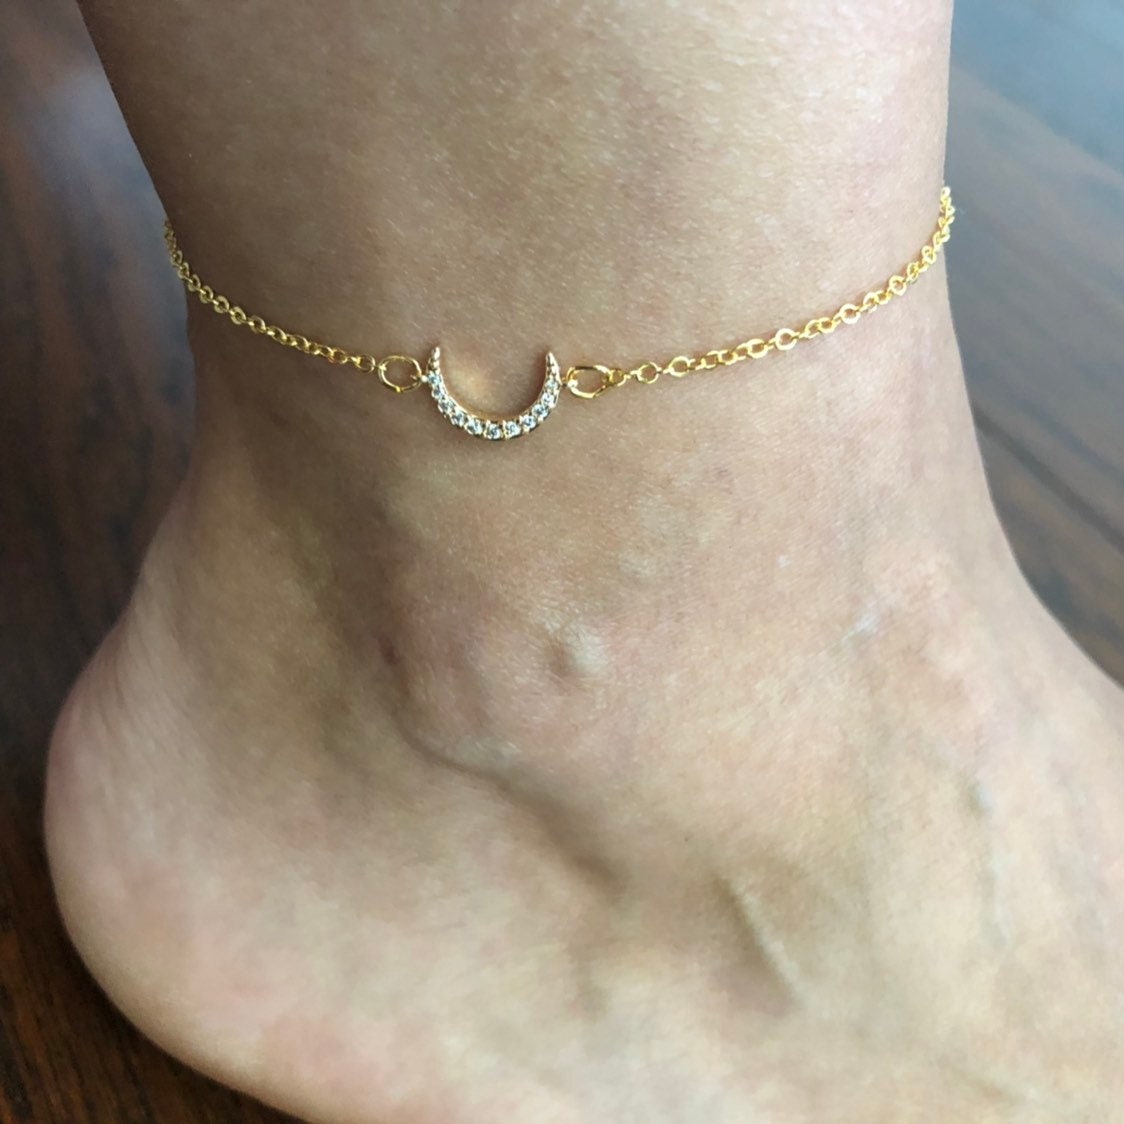 Unique Star Moon Love Beads Six-piece Anklet Women Bracelet, Fashion  Bracelets